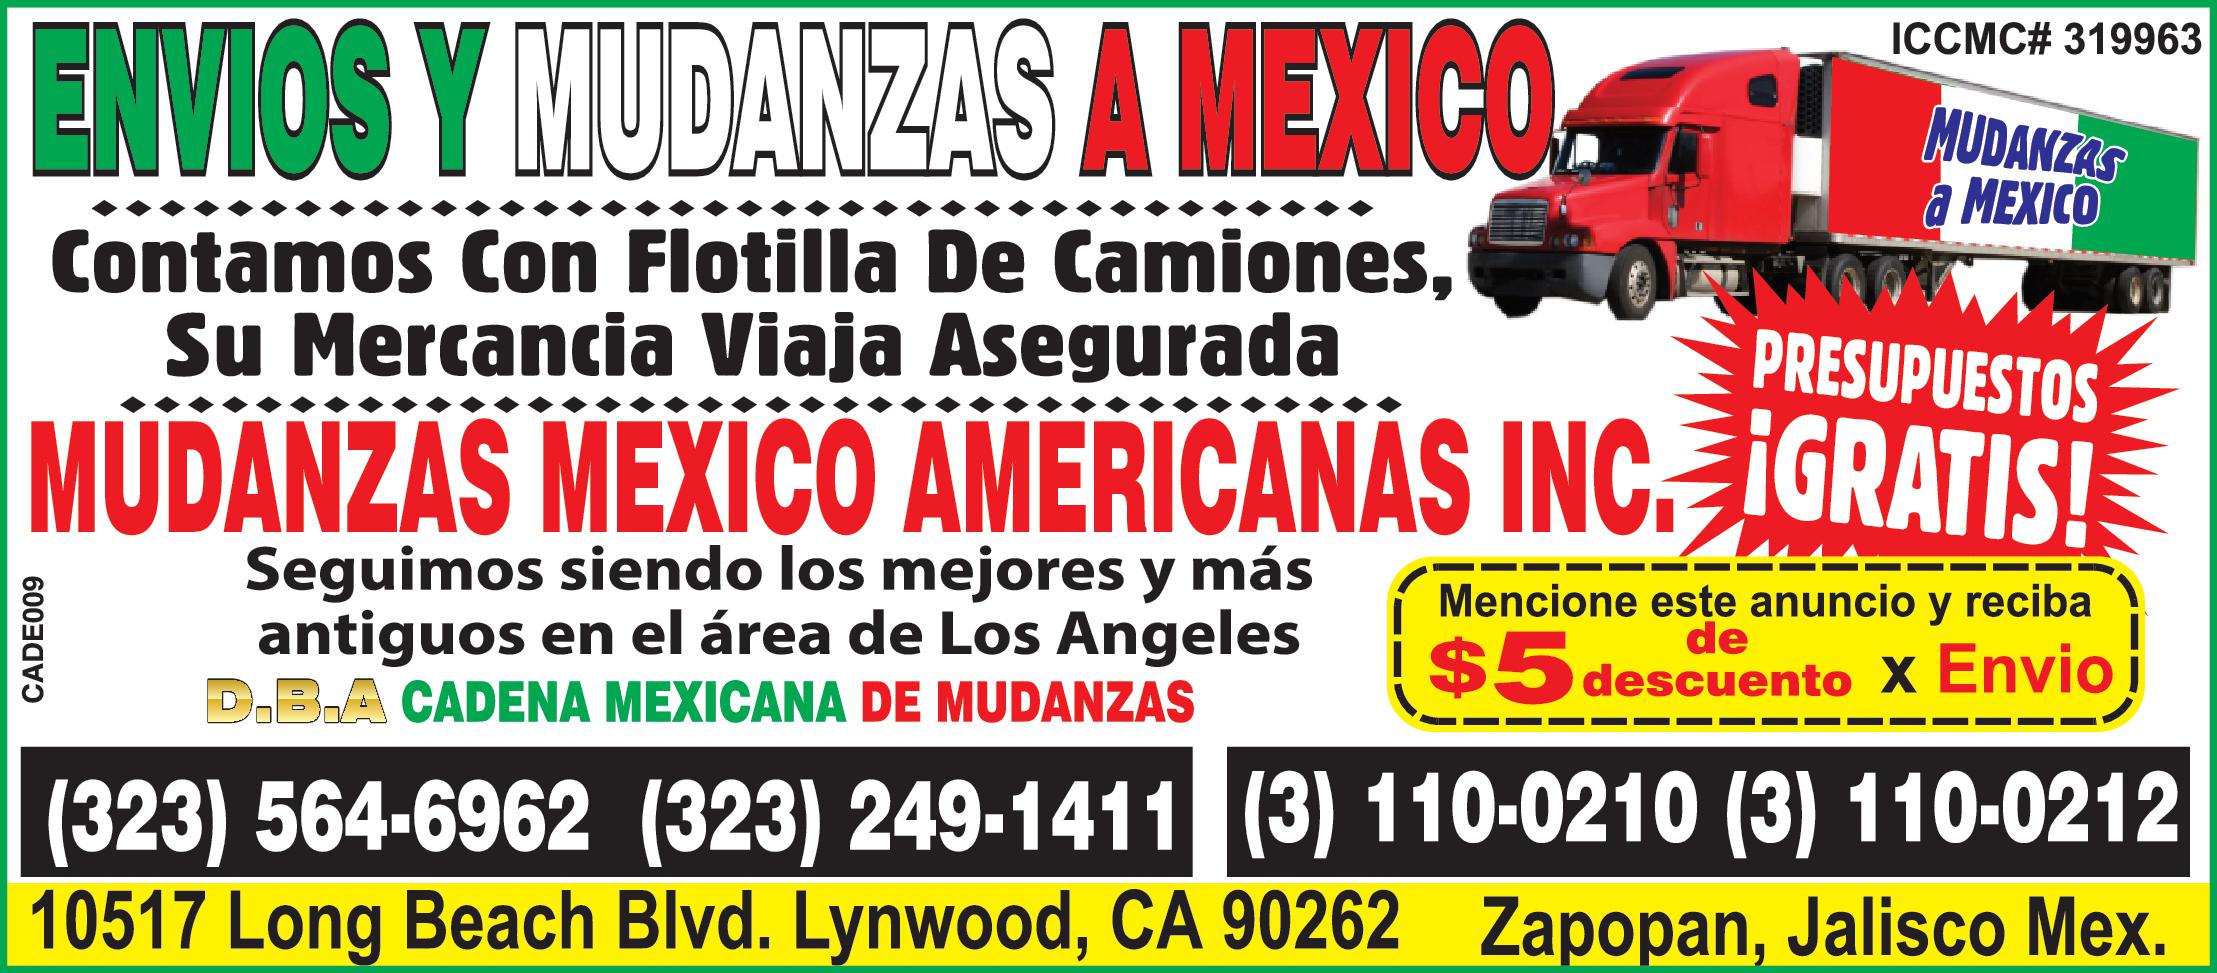 ENVIOS Y MUDANZAS A MEXICO Contamos Con Flotilla De Camiones Su Mercancia Viaja Asegurada MUDANZAS MEXICO www PRESUPUESTOS MUDANZAS MEXICO AMERICANAS INC IGRATIS CADE009 ICCMC 319963 Seguimos siendo los mejores más antiguos en el área de Los Angeles D.B.A CADENA MEXICANA DE MUDANZAS Mencione este anuncio reciba descuento Envio 323 564-6962 323 249-1411 110-0210 110-0212 10517 Long Beach Blvd. Lynwood CA 90262 Zapopan Jalisco Mex